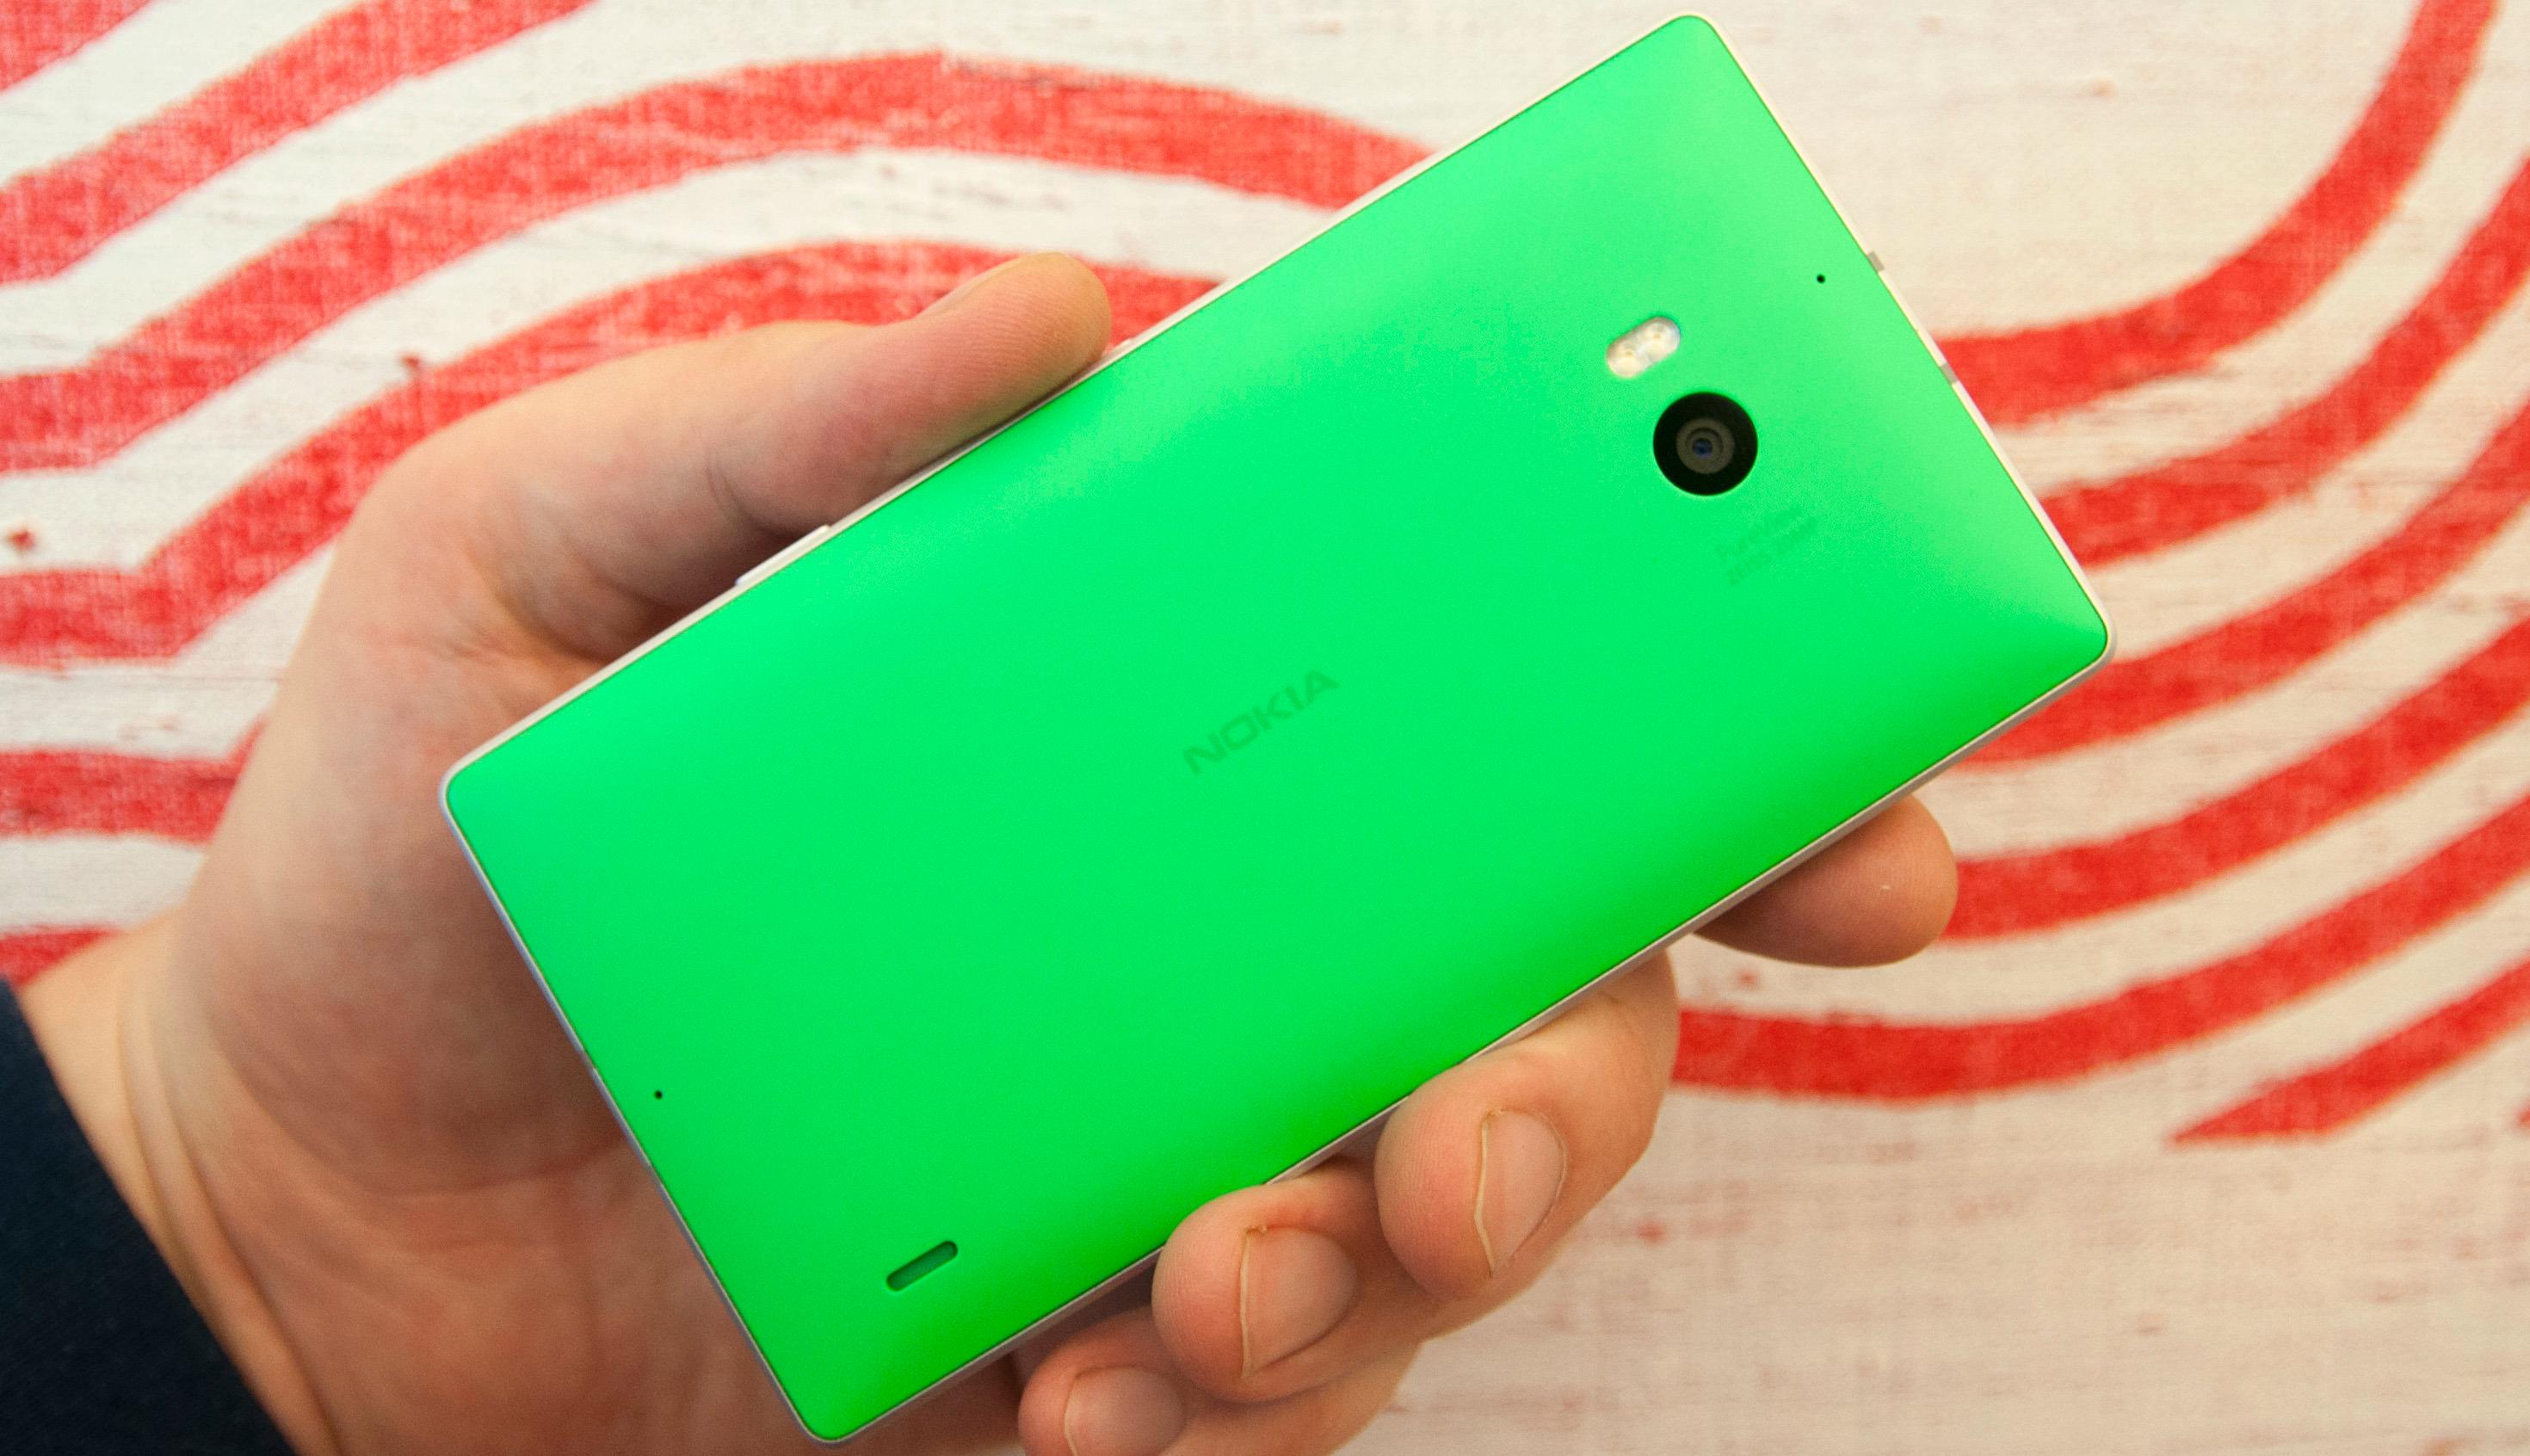 Kjøper du en grønn eller oransje Lumia 930 er du synlig på lang avstand.Foto: Finn Jarle Kvalheim, Amobil.no